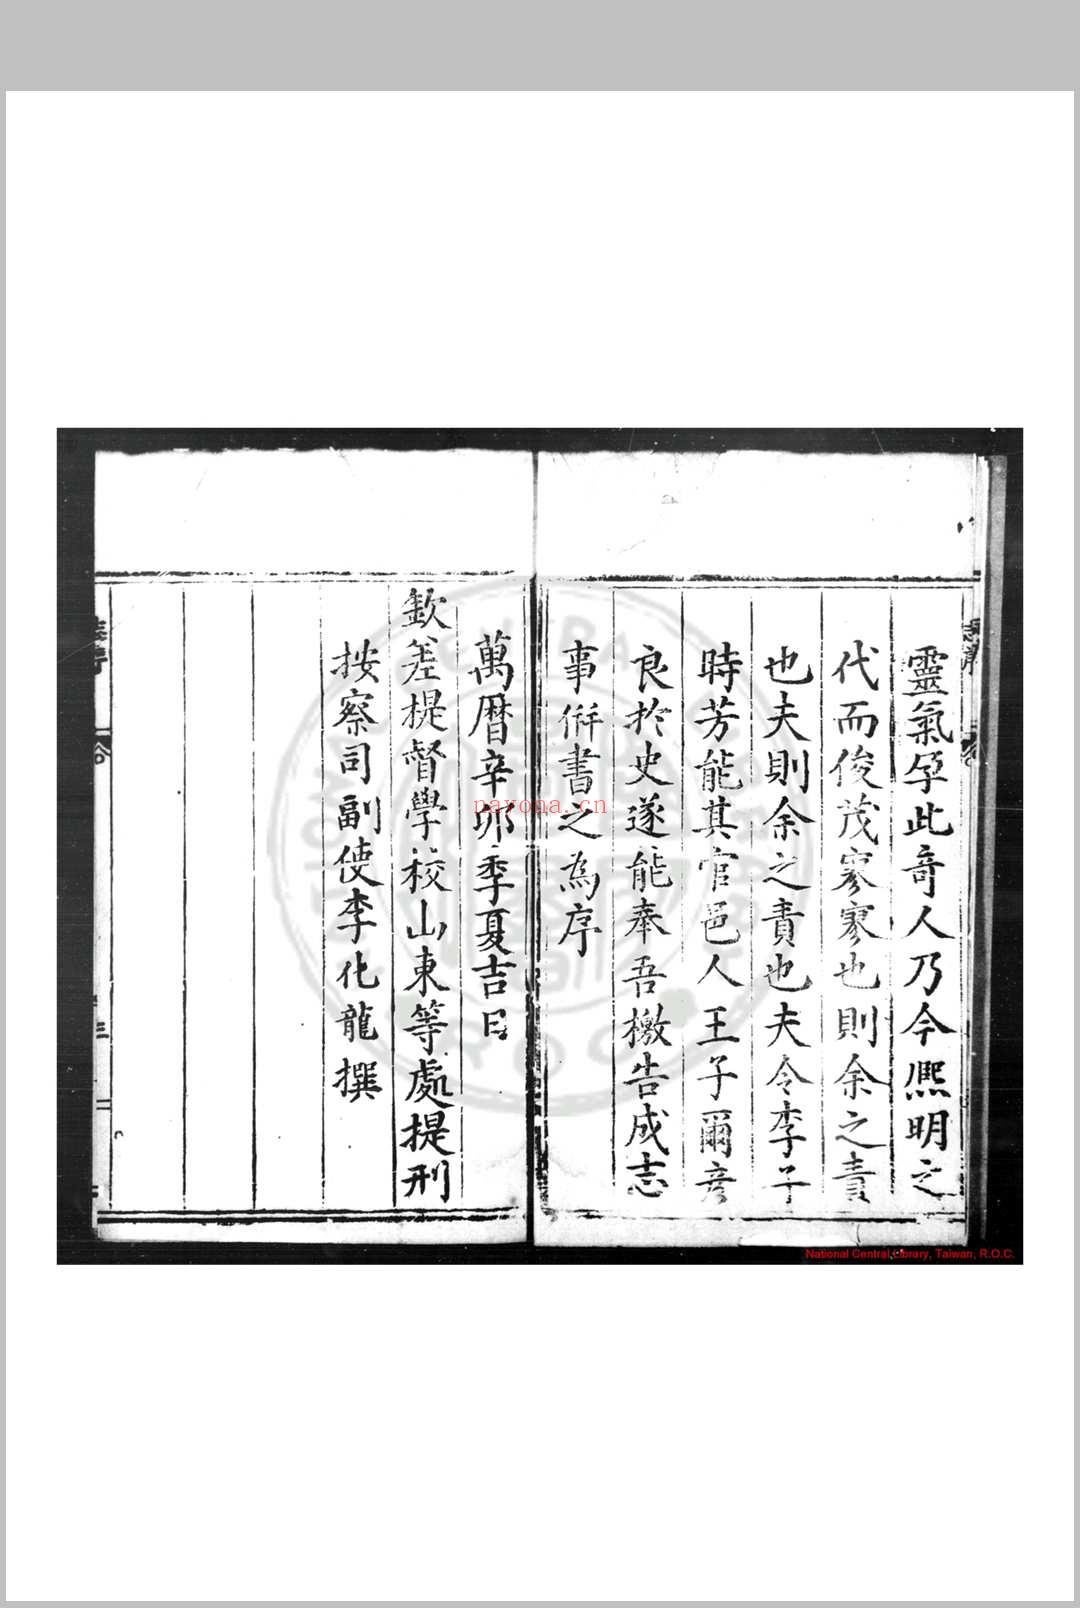 蒲台志 (明)王尔彦等纂修 明万历辛卯(十九年, 1591)刊本